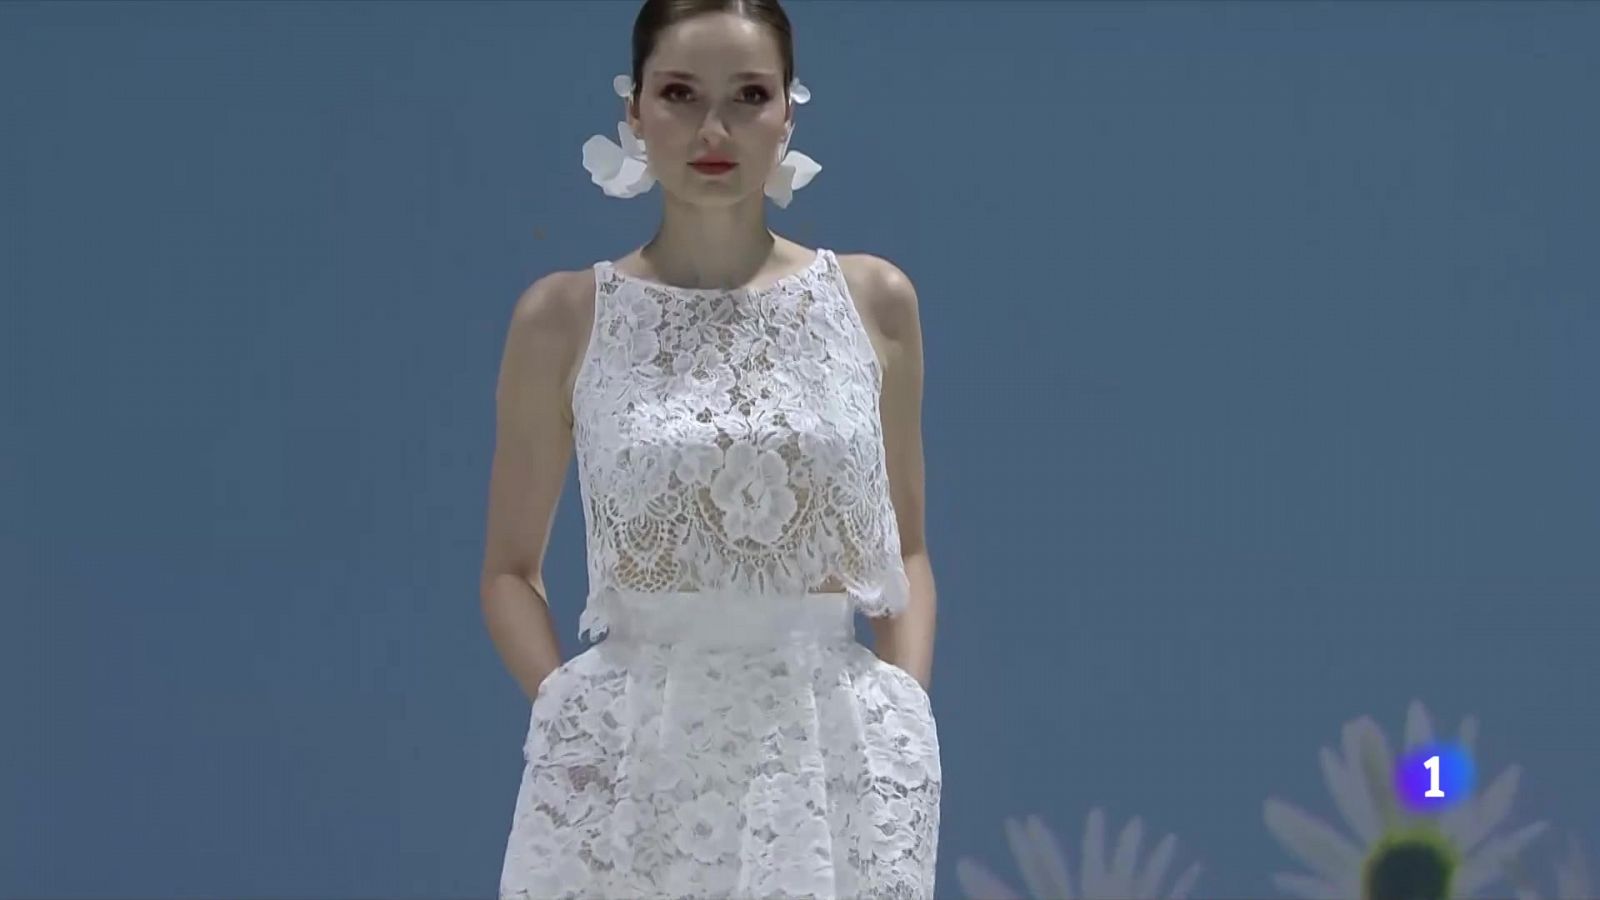 La Bridal Fashion Week muestra las tendencias en moda nupcial en Barcelona